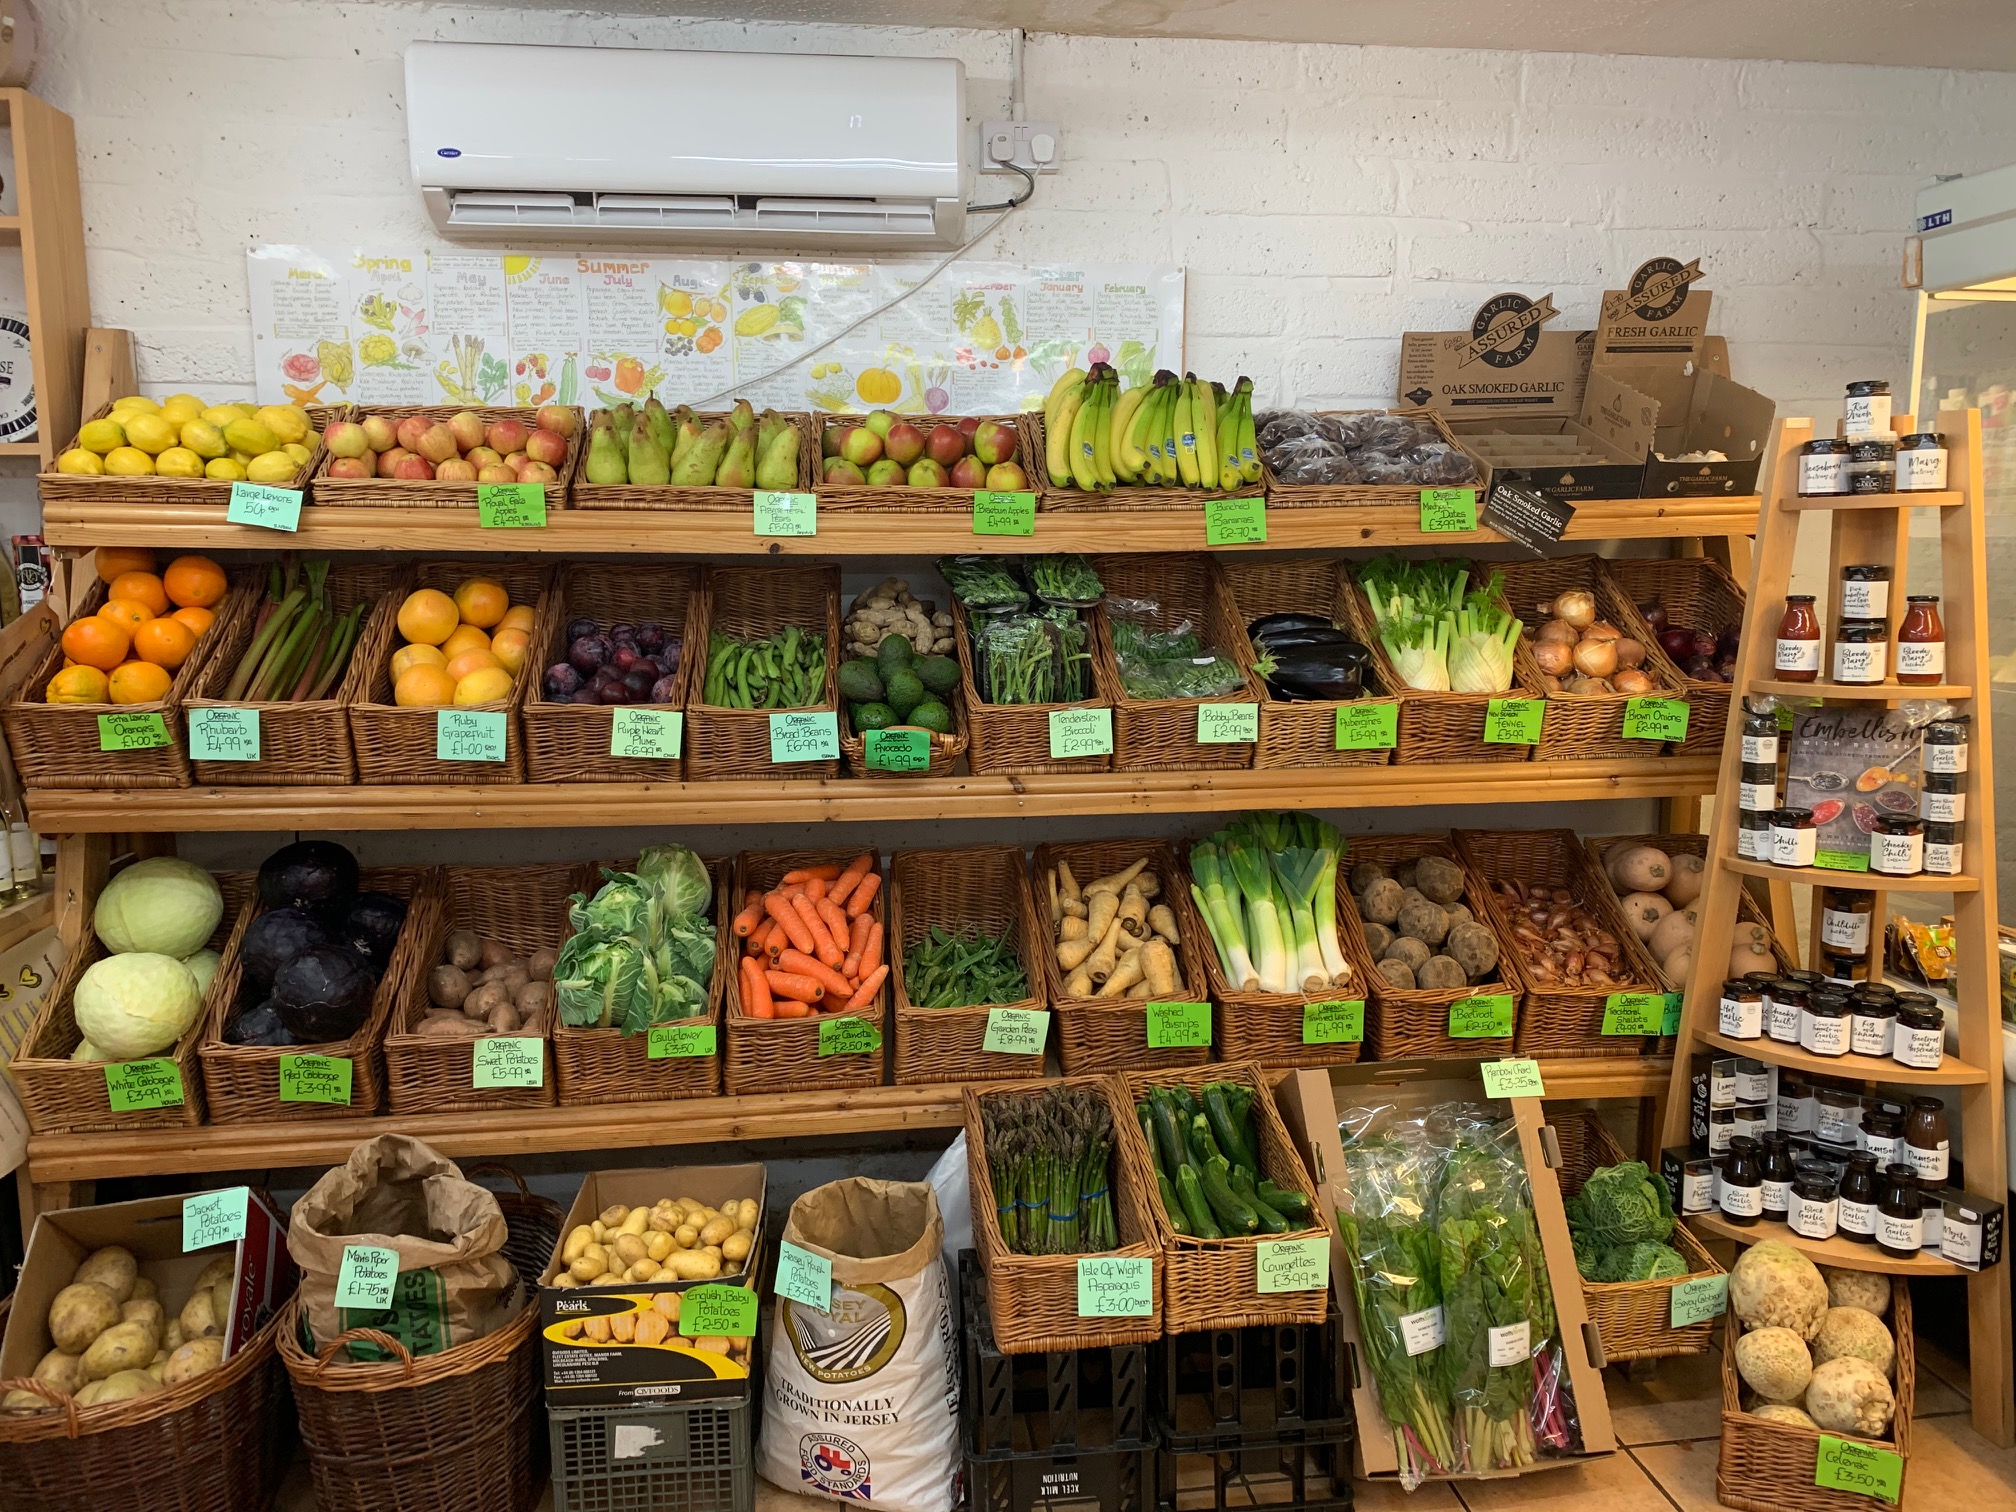 Selection of fruit and veg at Beaulieu Farm Shop